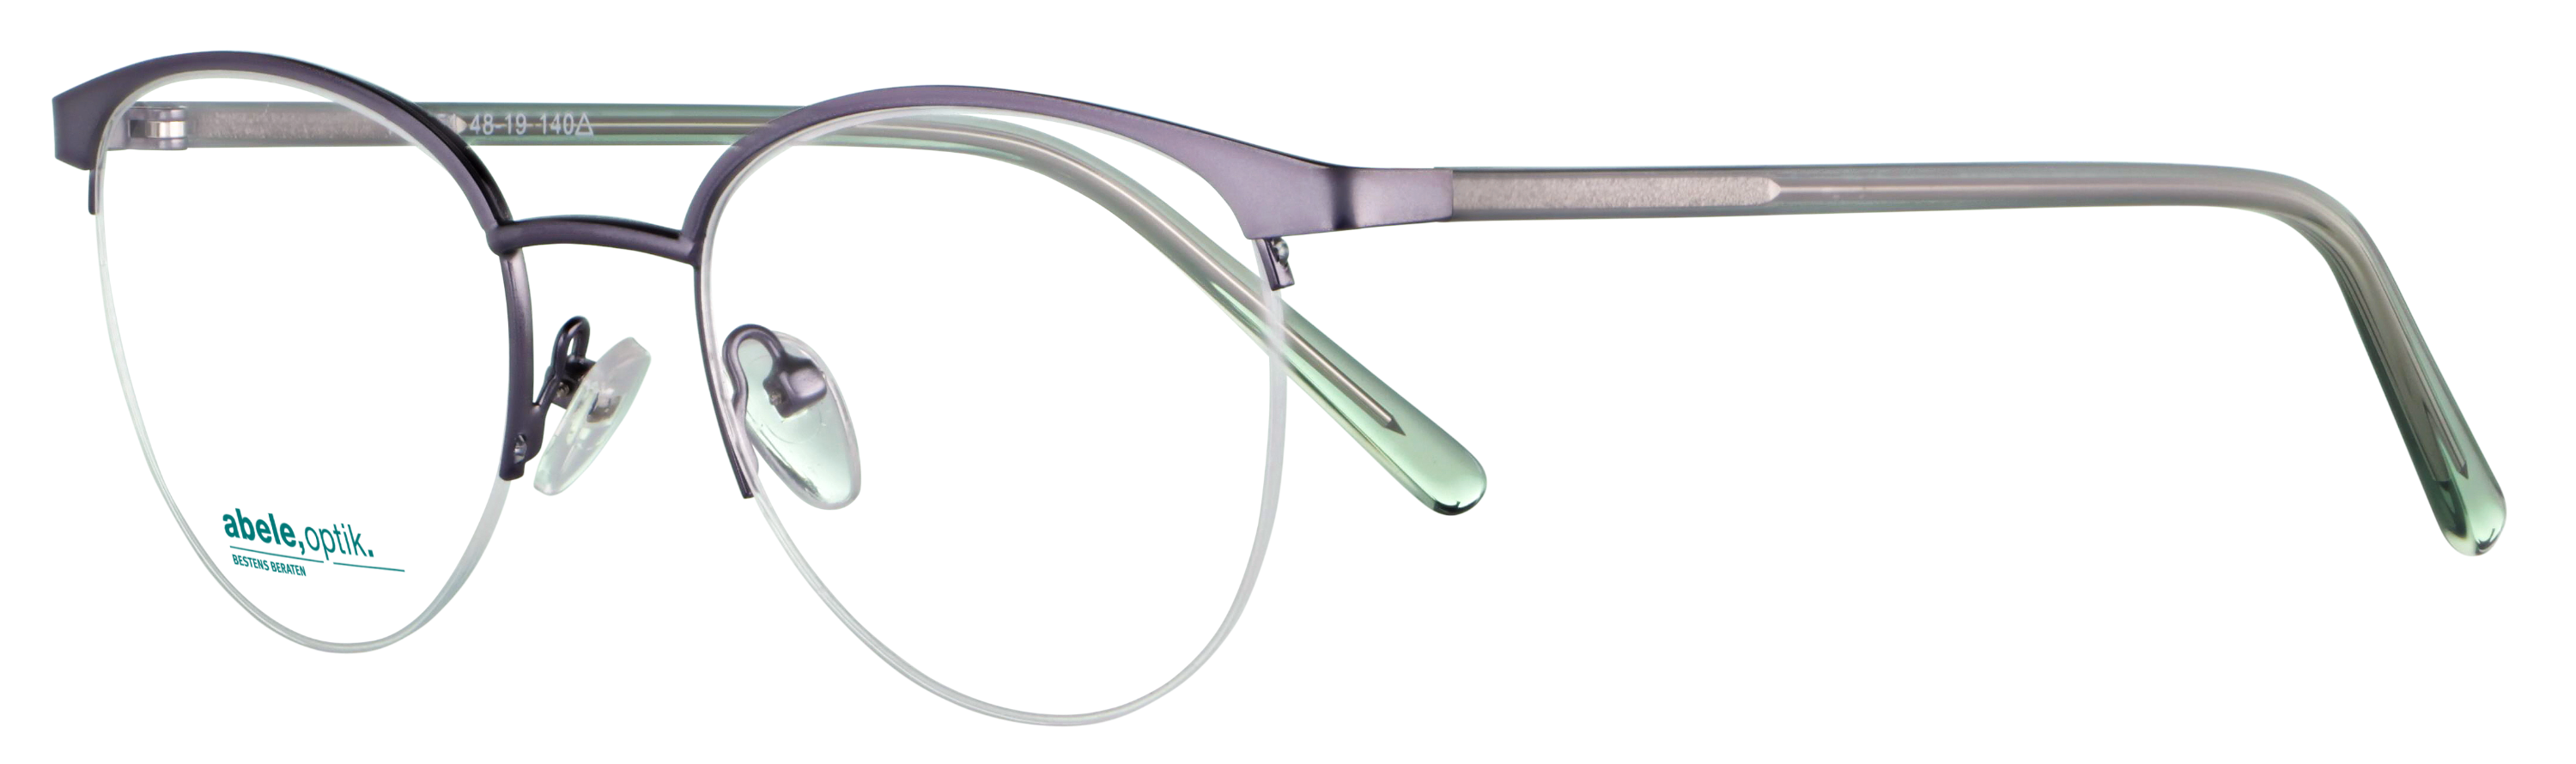 Das Bild zeigt die Korrektionsbrille 141851 von der Marke Abele Optik in nylor dunkelgrau.